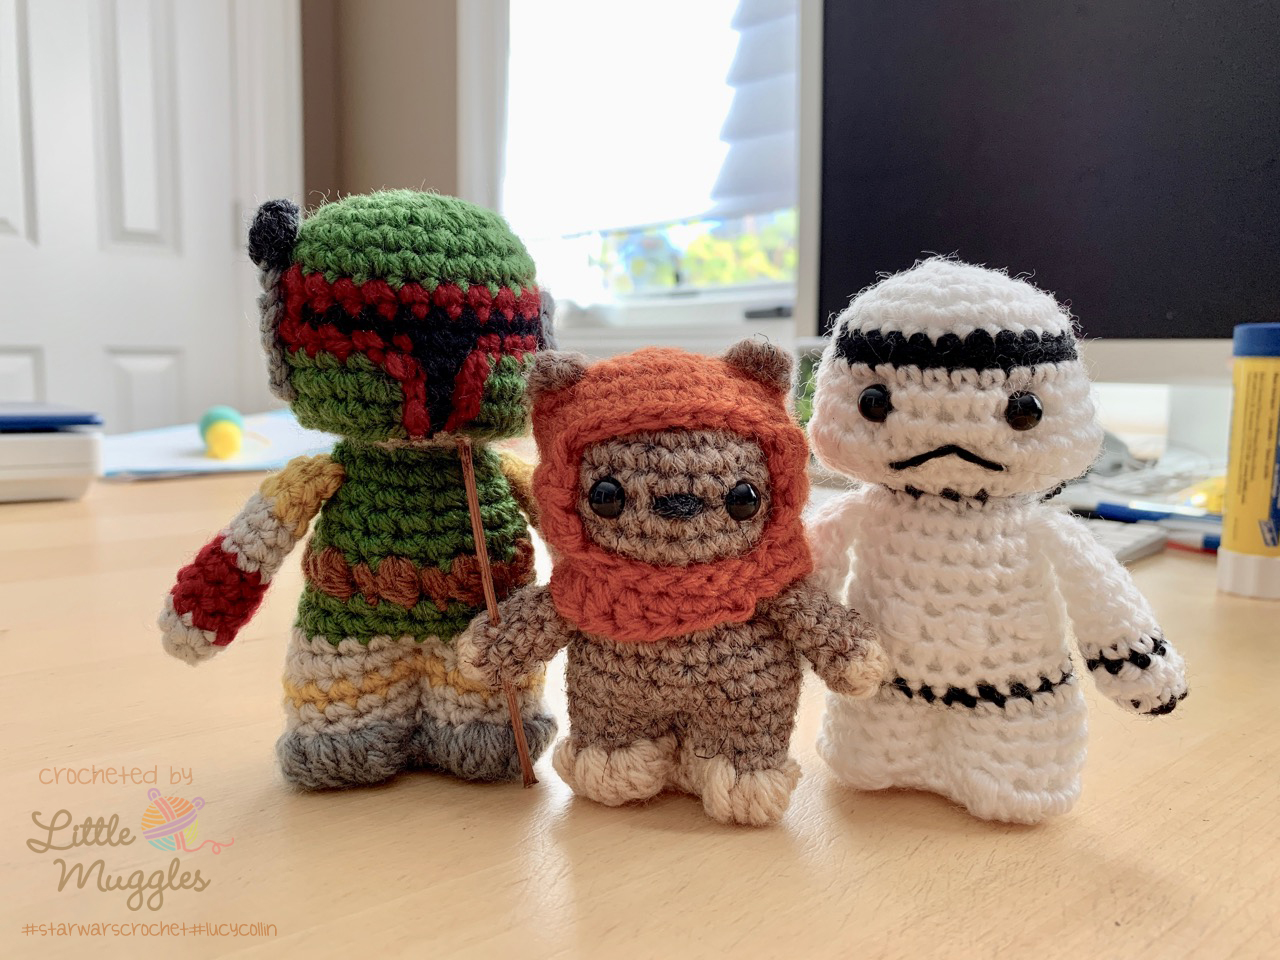 Crochet Kits, Amigurumi Crochet Kits, Disney Crochet Kits, Crochet